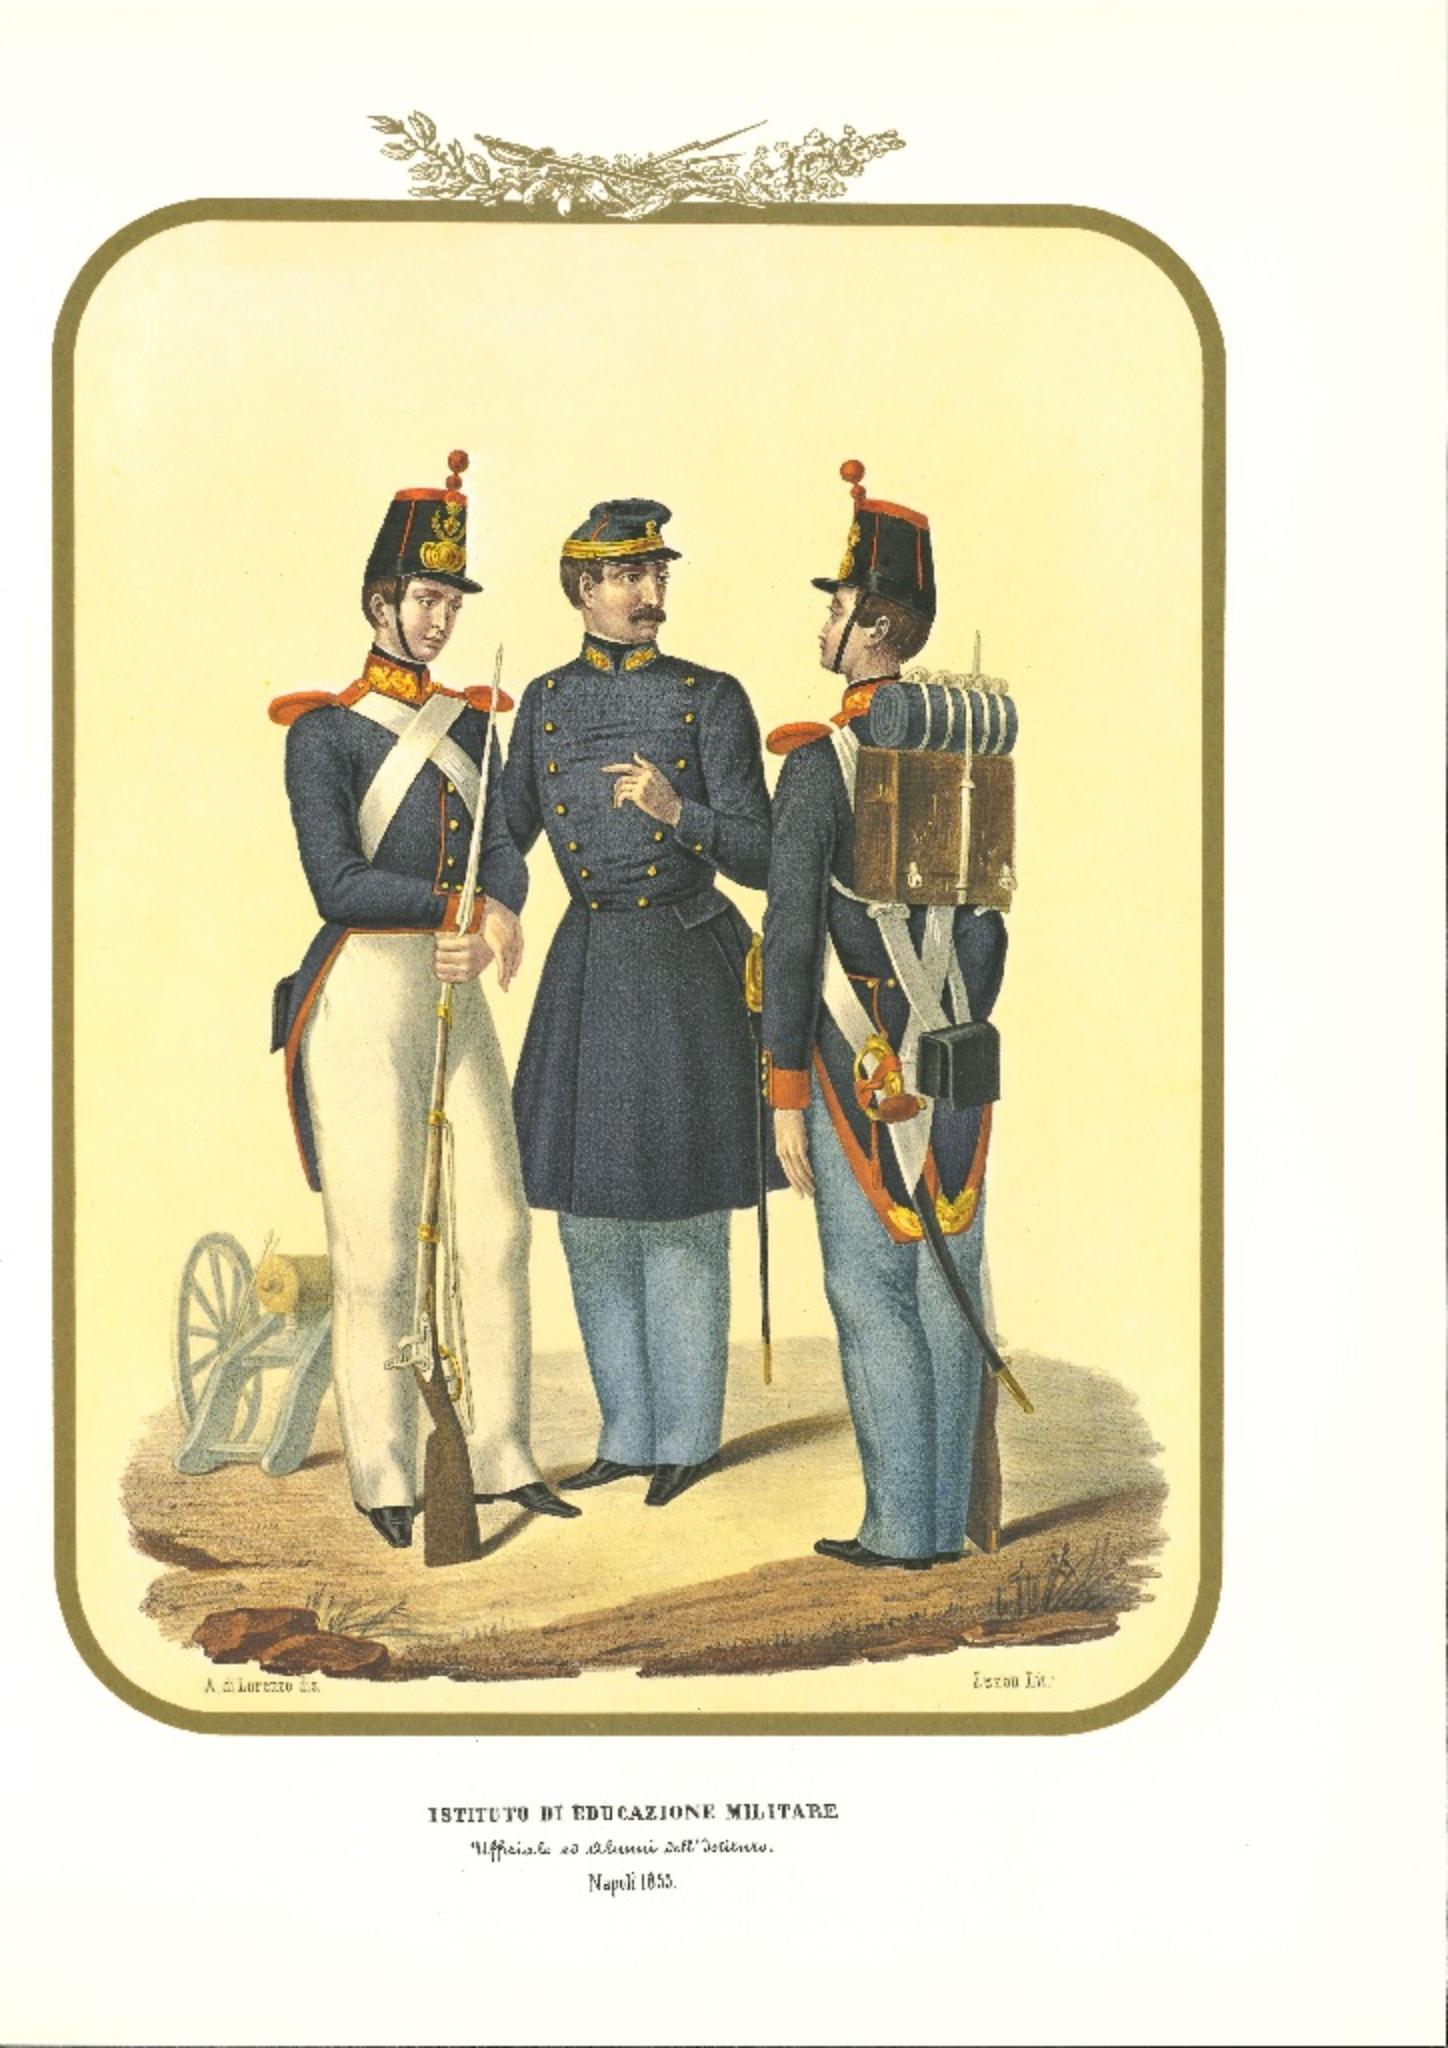 Military Education Institute ist eine Original-Lithographie von Antonio Zezon. Neapel 1853.

Interessante Farblithografie, die einige Mitglieder des Militärischen Bildungsinstituts beschreibt: Beamte und Schüler des Instituts.

Dieser Druck ist in